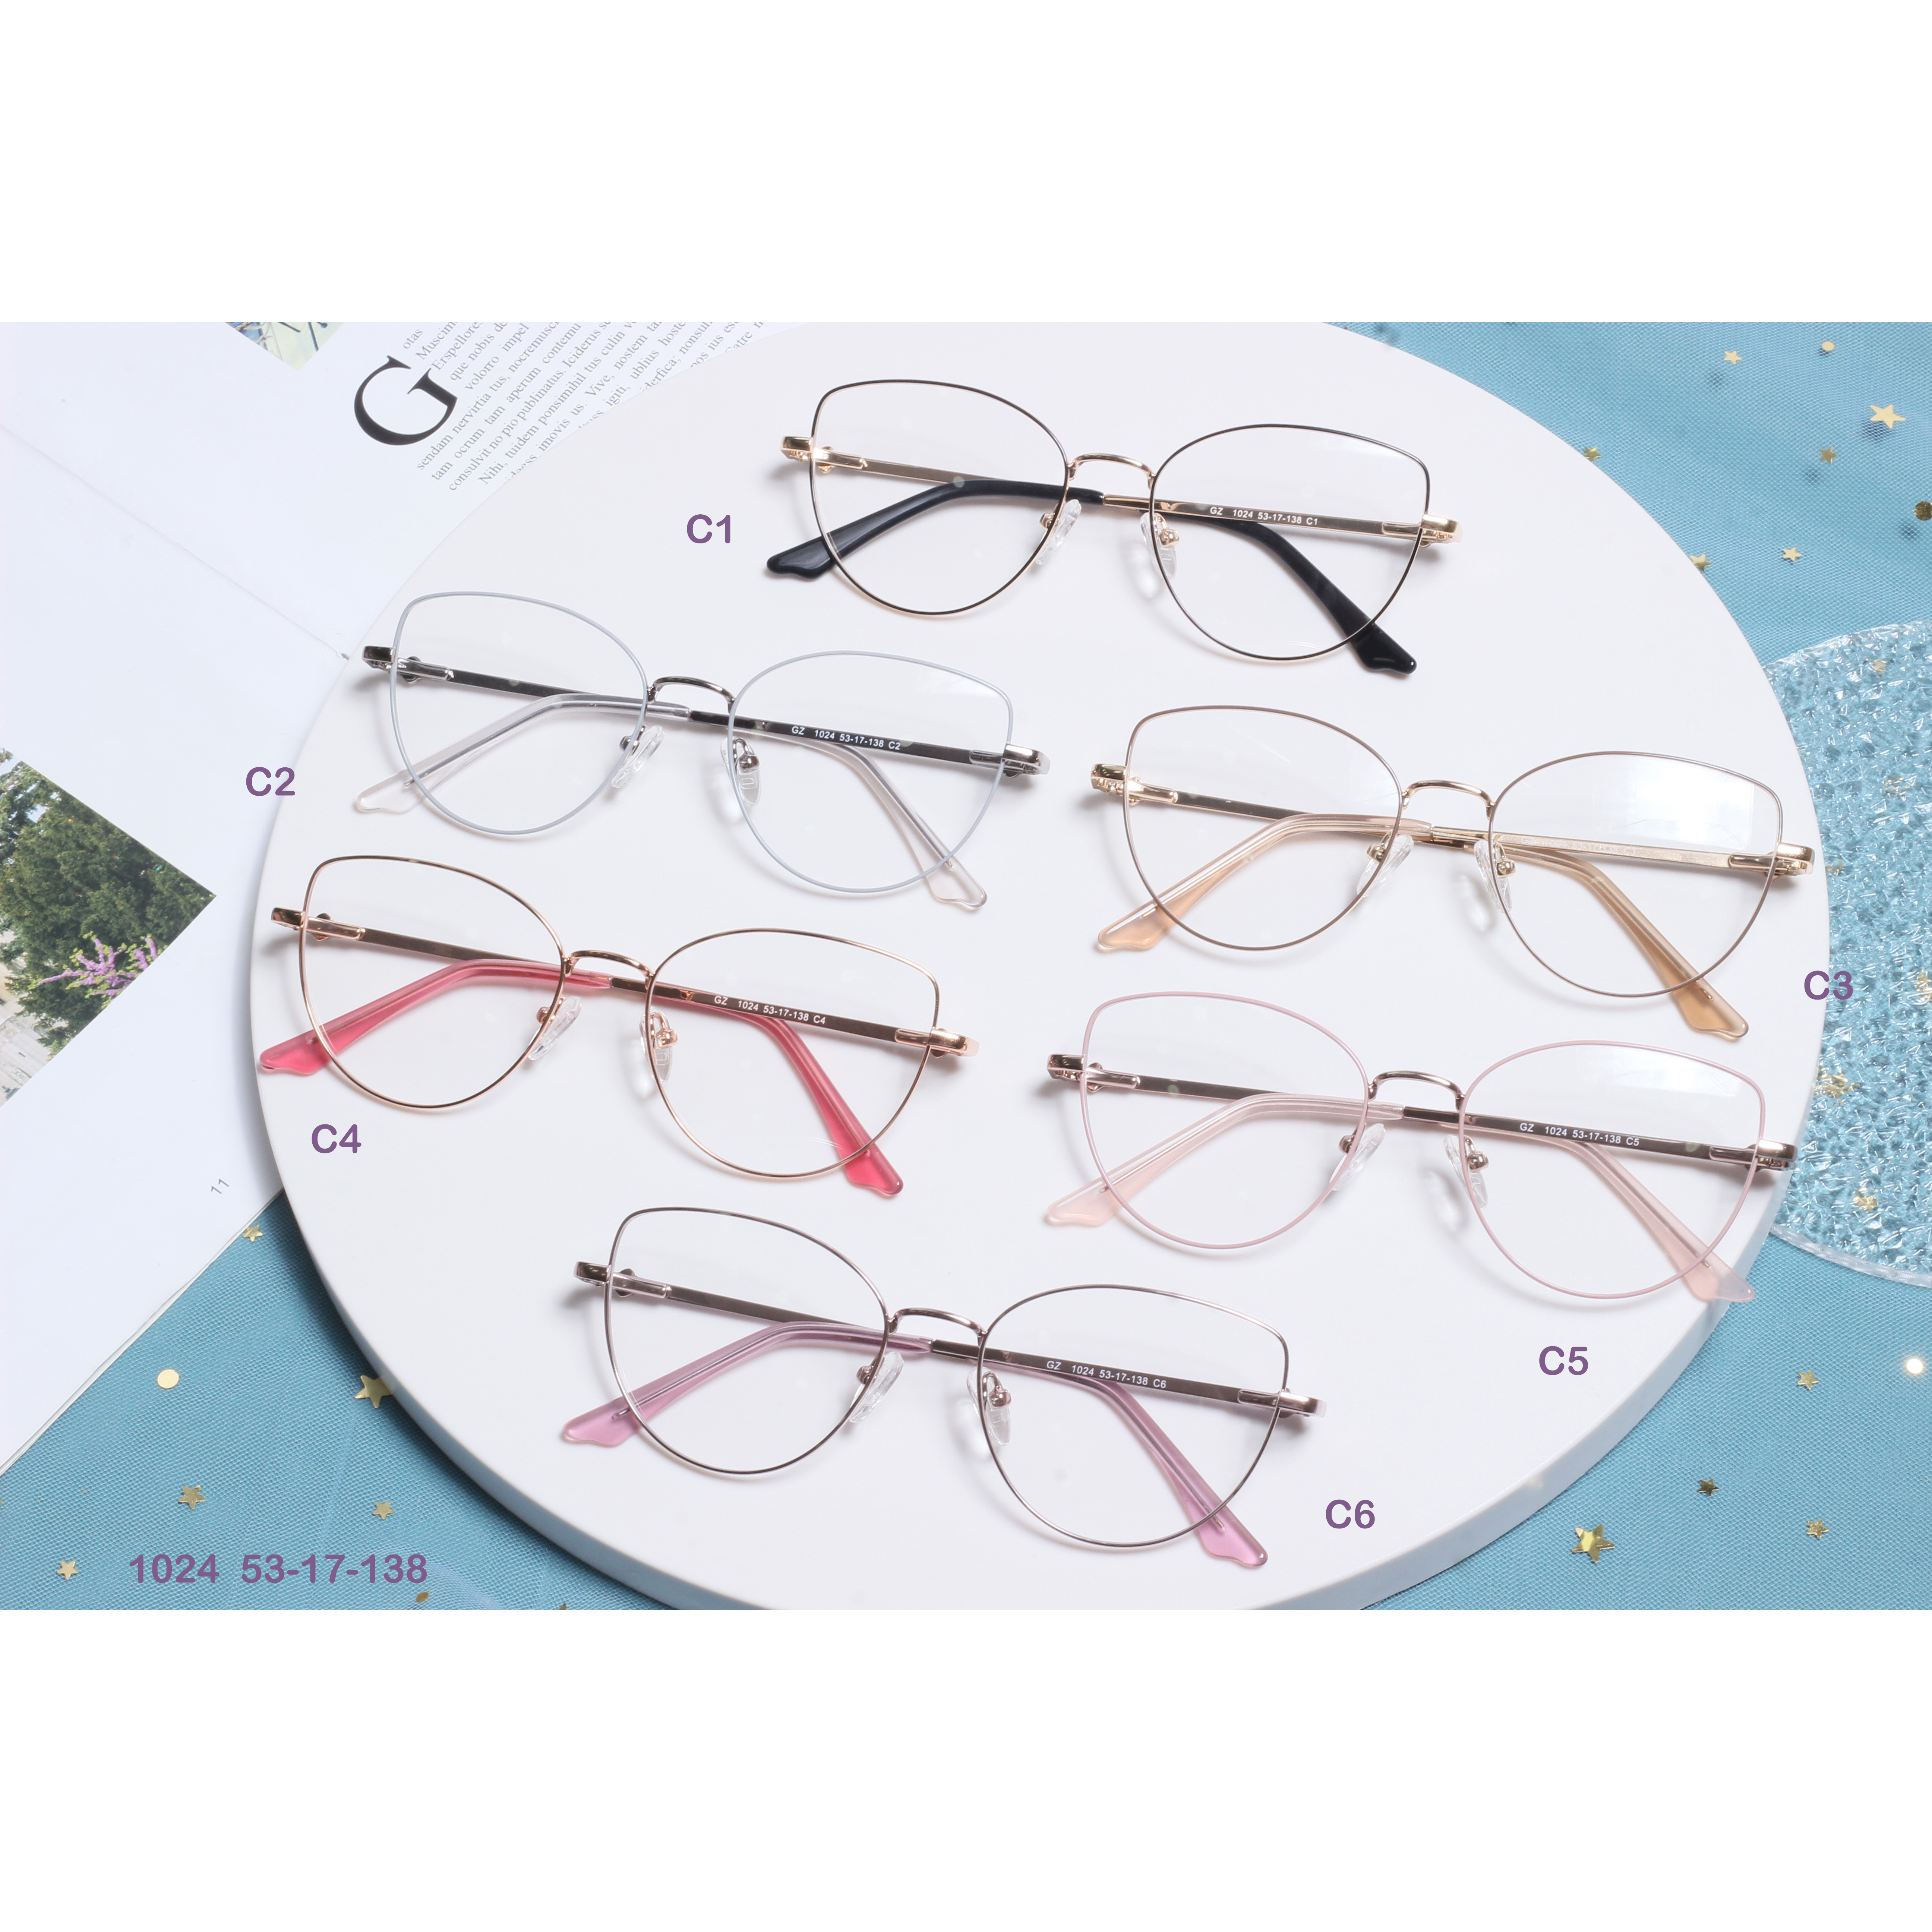 चश्मे का फ्रेम धातु का चश्मा कांच का फ्रेम (2)